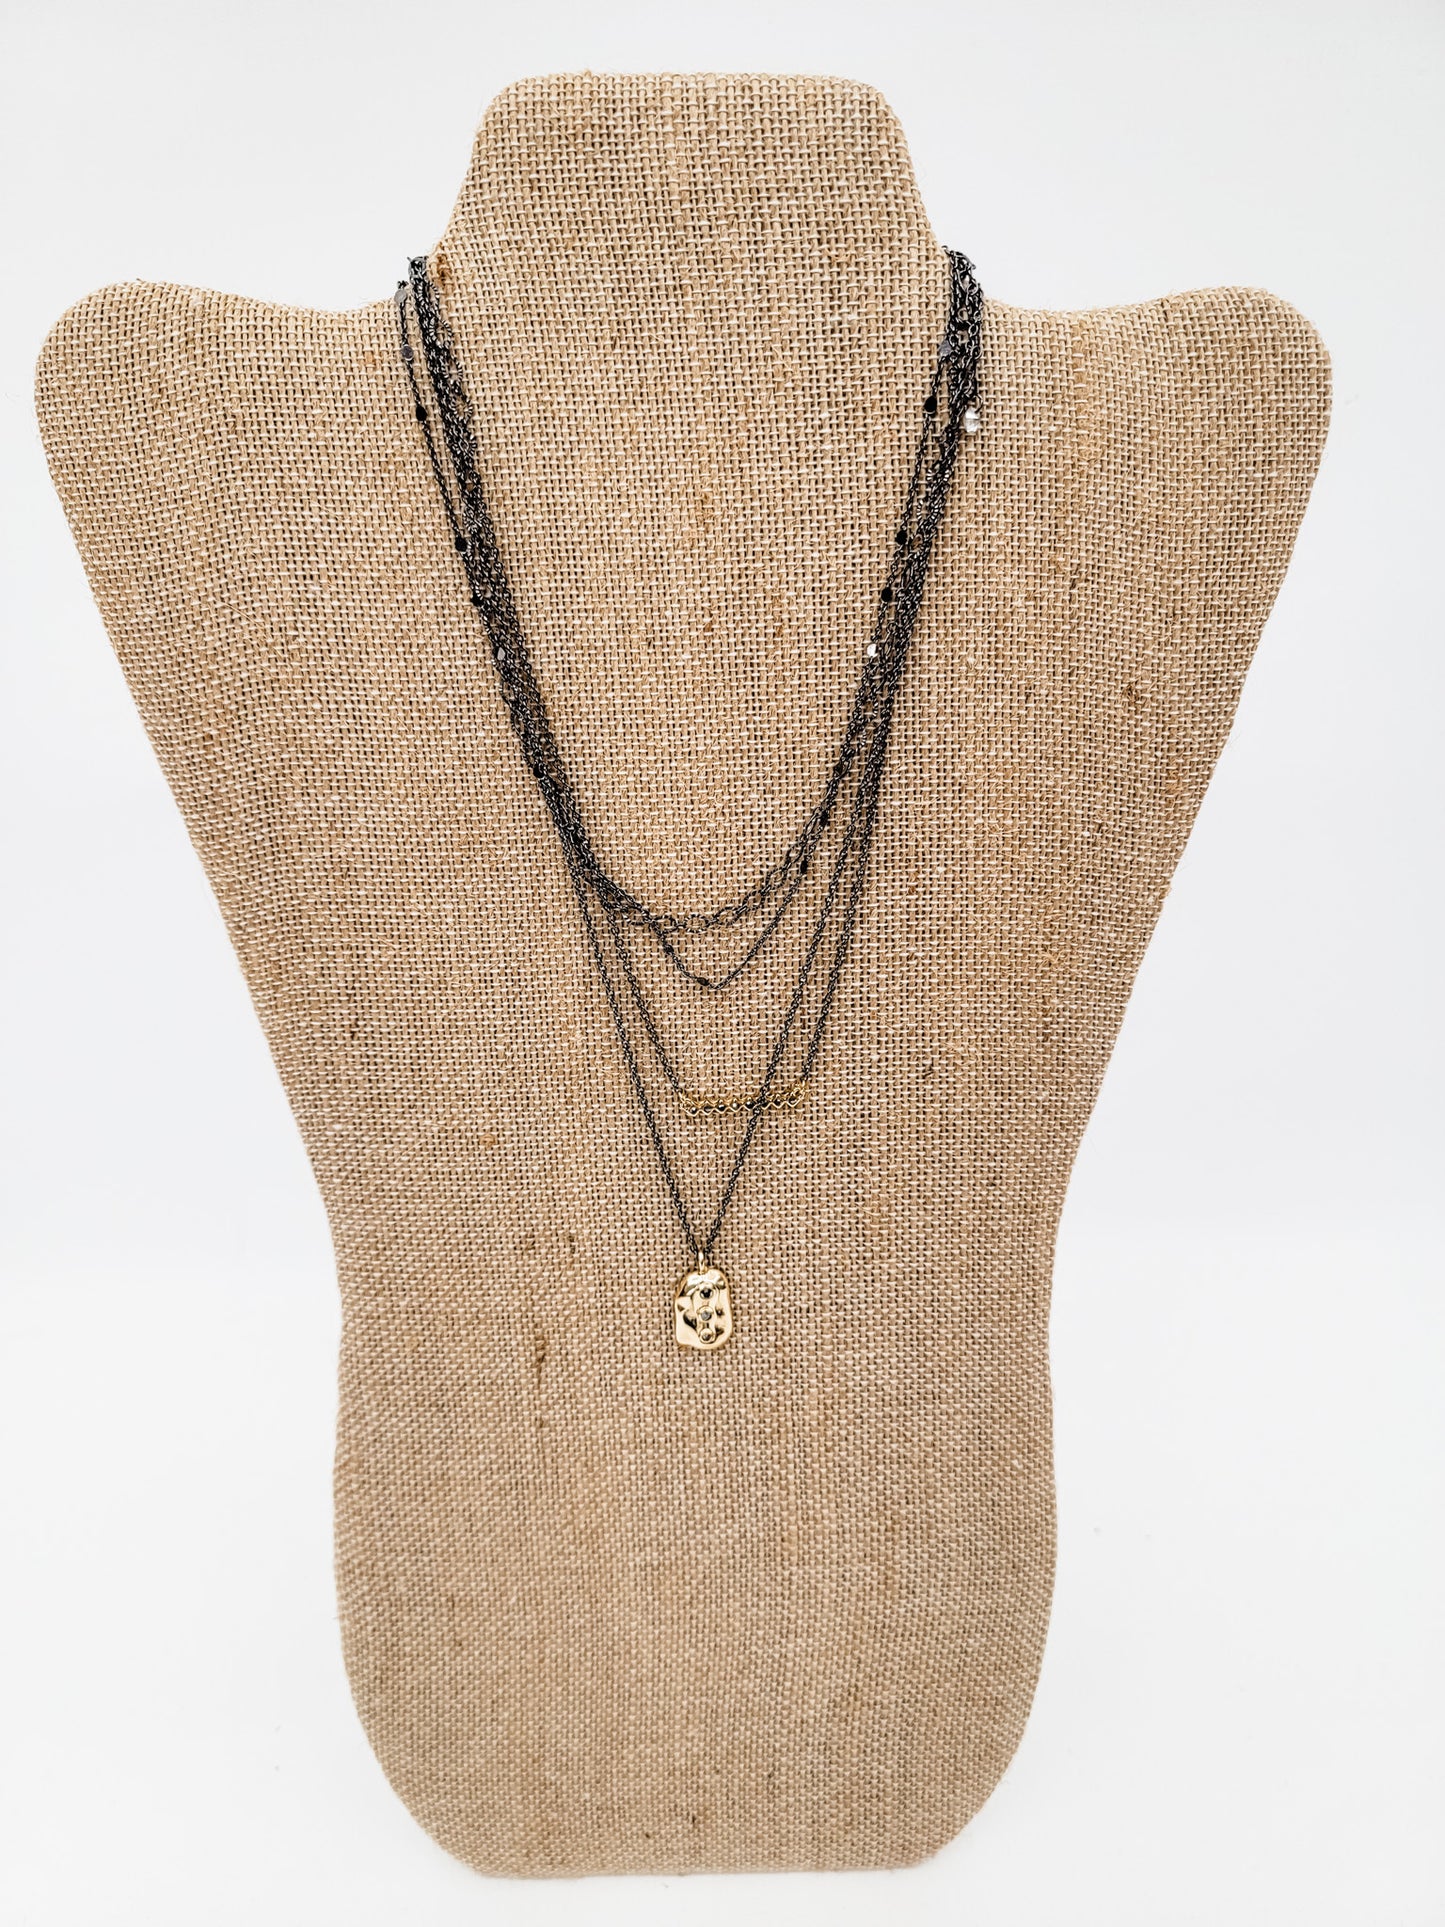 Black & Gold Paperclip Necklace & Bracelets - Variety